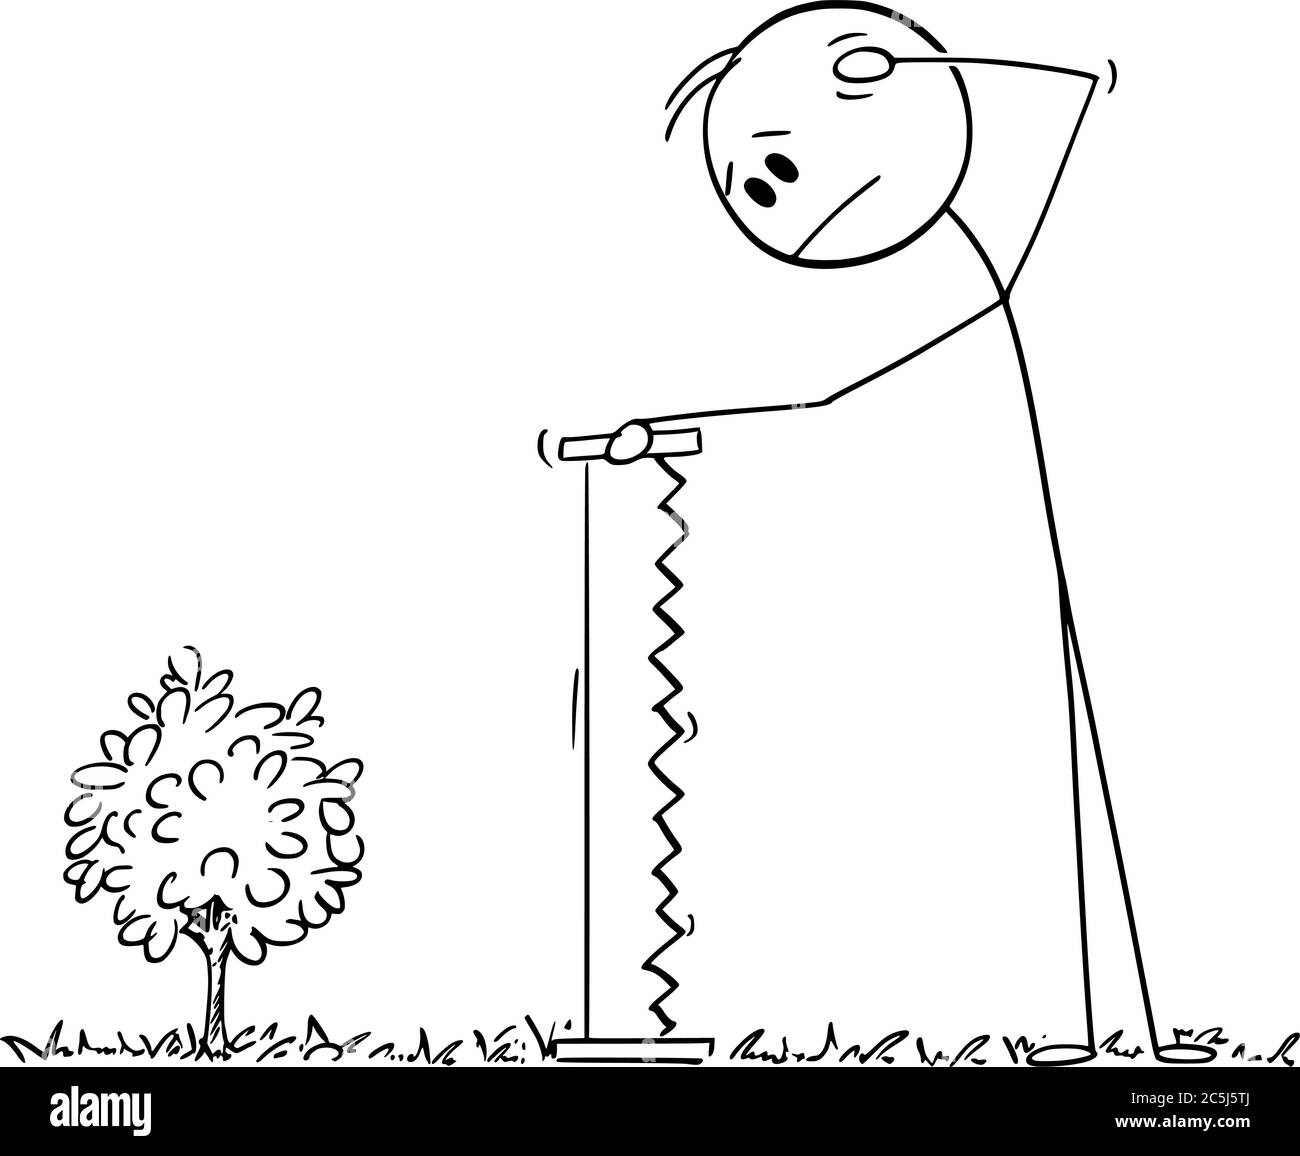 Vector dibujo de la figura de la barra de dibujos ilustración conceptual  del hombre perplejo que sostiene la sierra de mano grande mirando a árbol  pequeño de la planta joven, demasiado pequeño